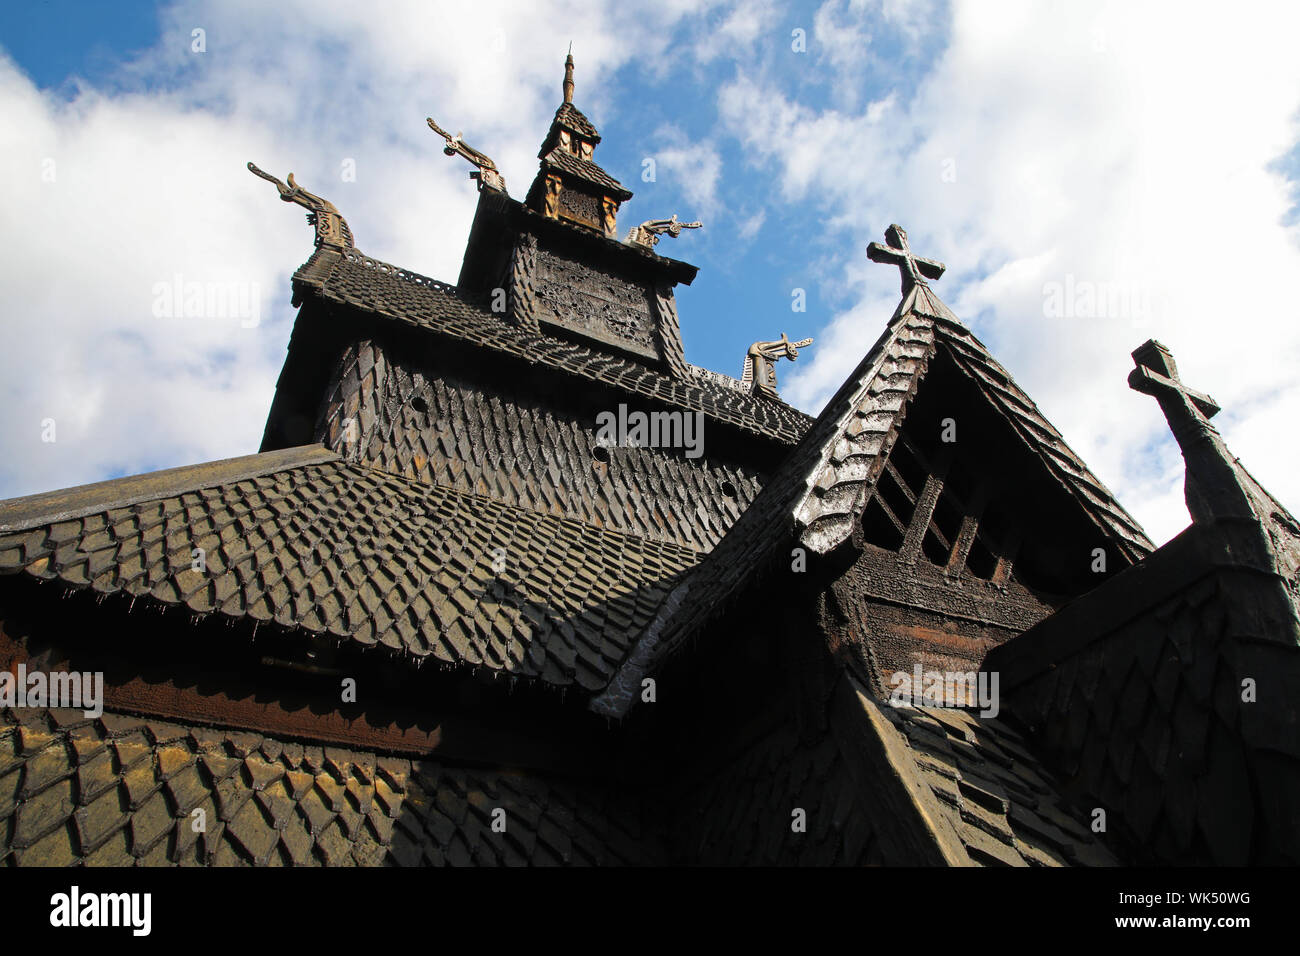 La maestà del Borgund stavkirke in Norvegia. Il tetto di una antica chiesa di legno quasi 900 anni. Foto Stock